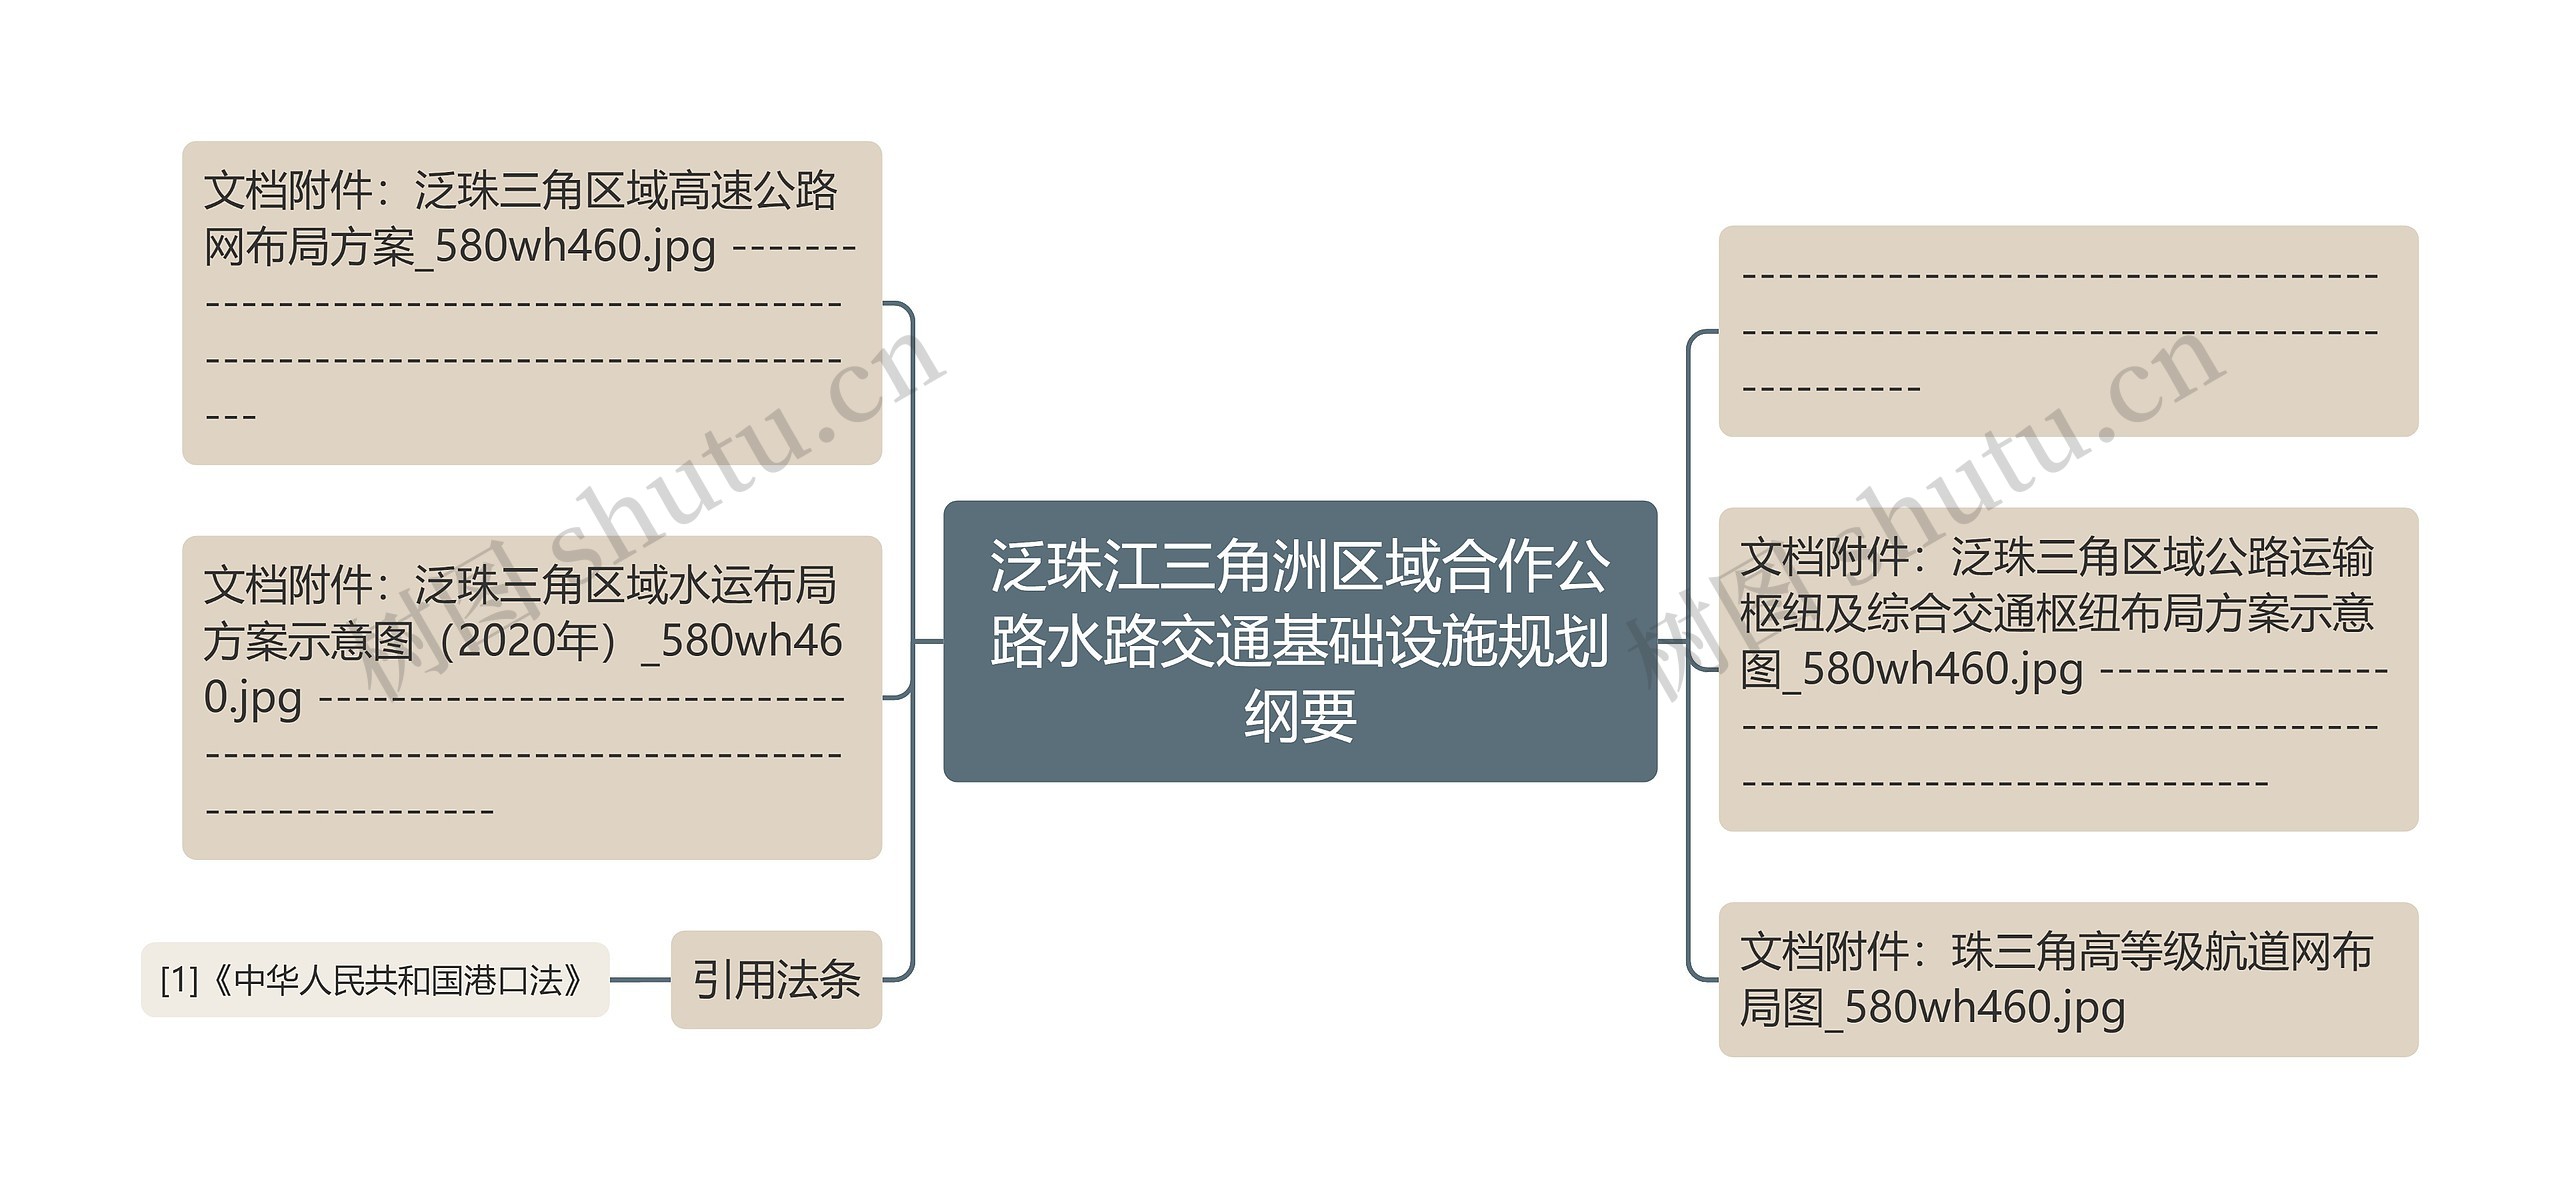 泛珠江三角洲区域合作公路水路交通基础设施规划纲要